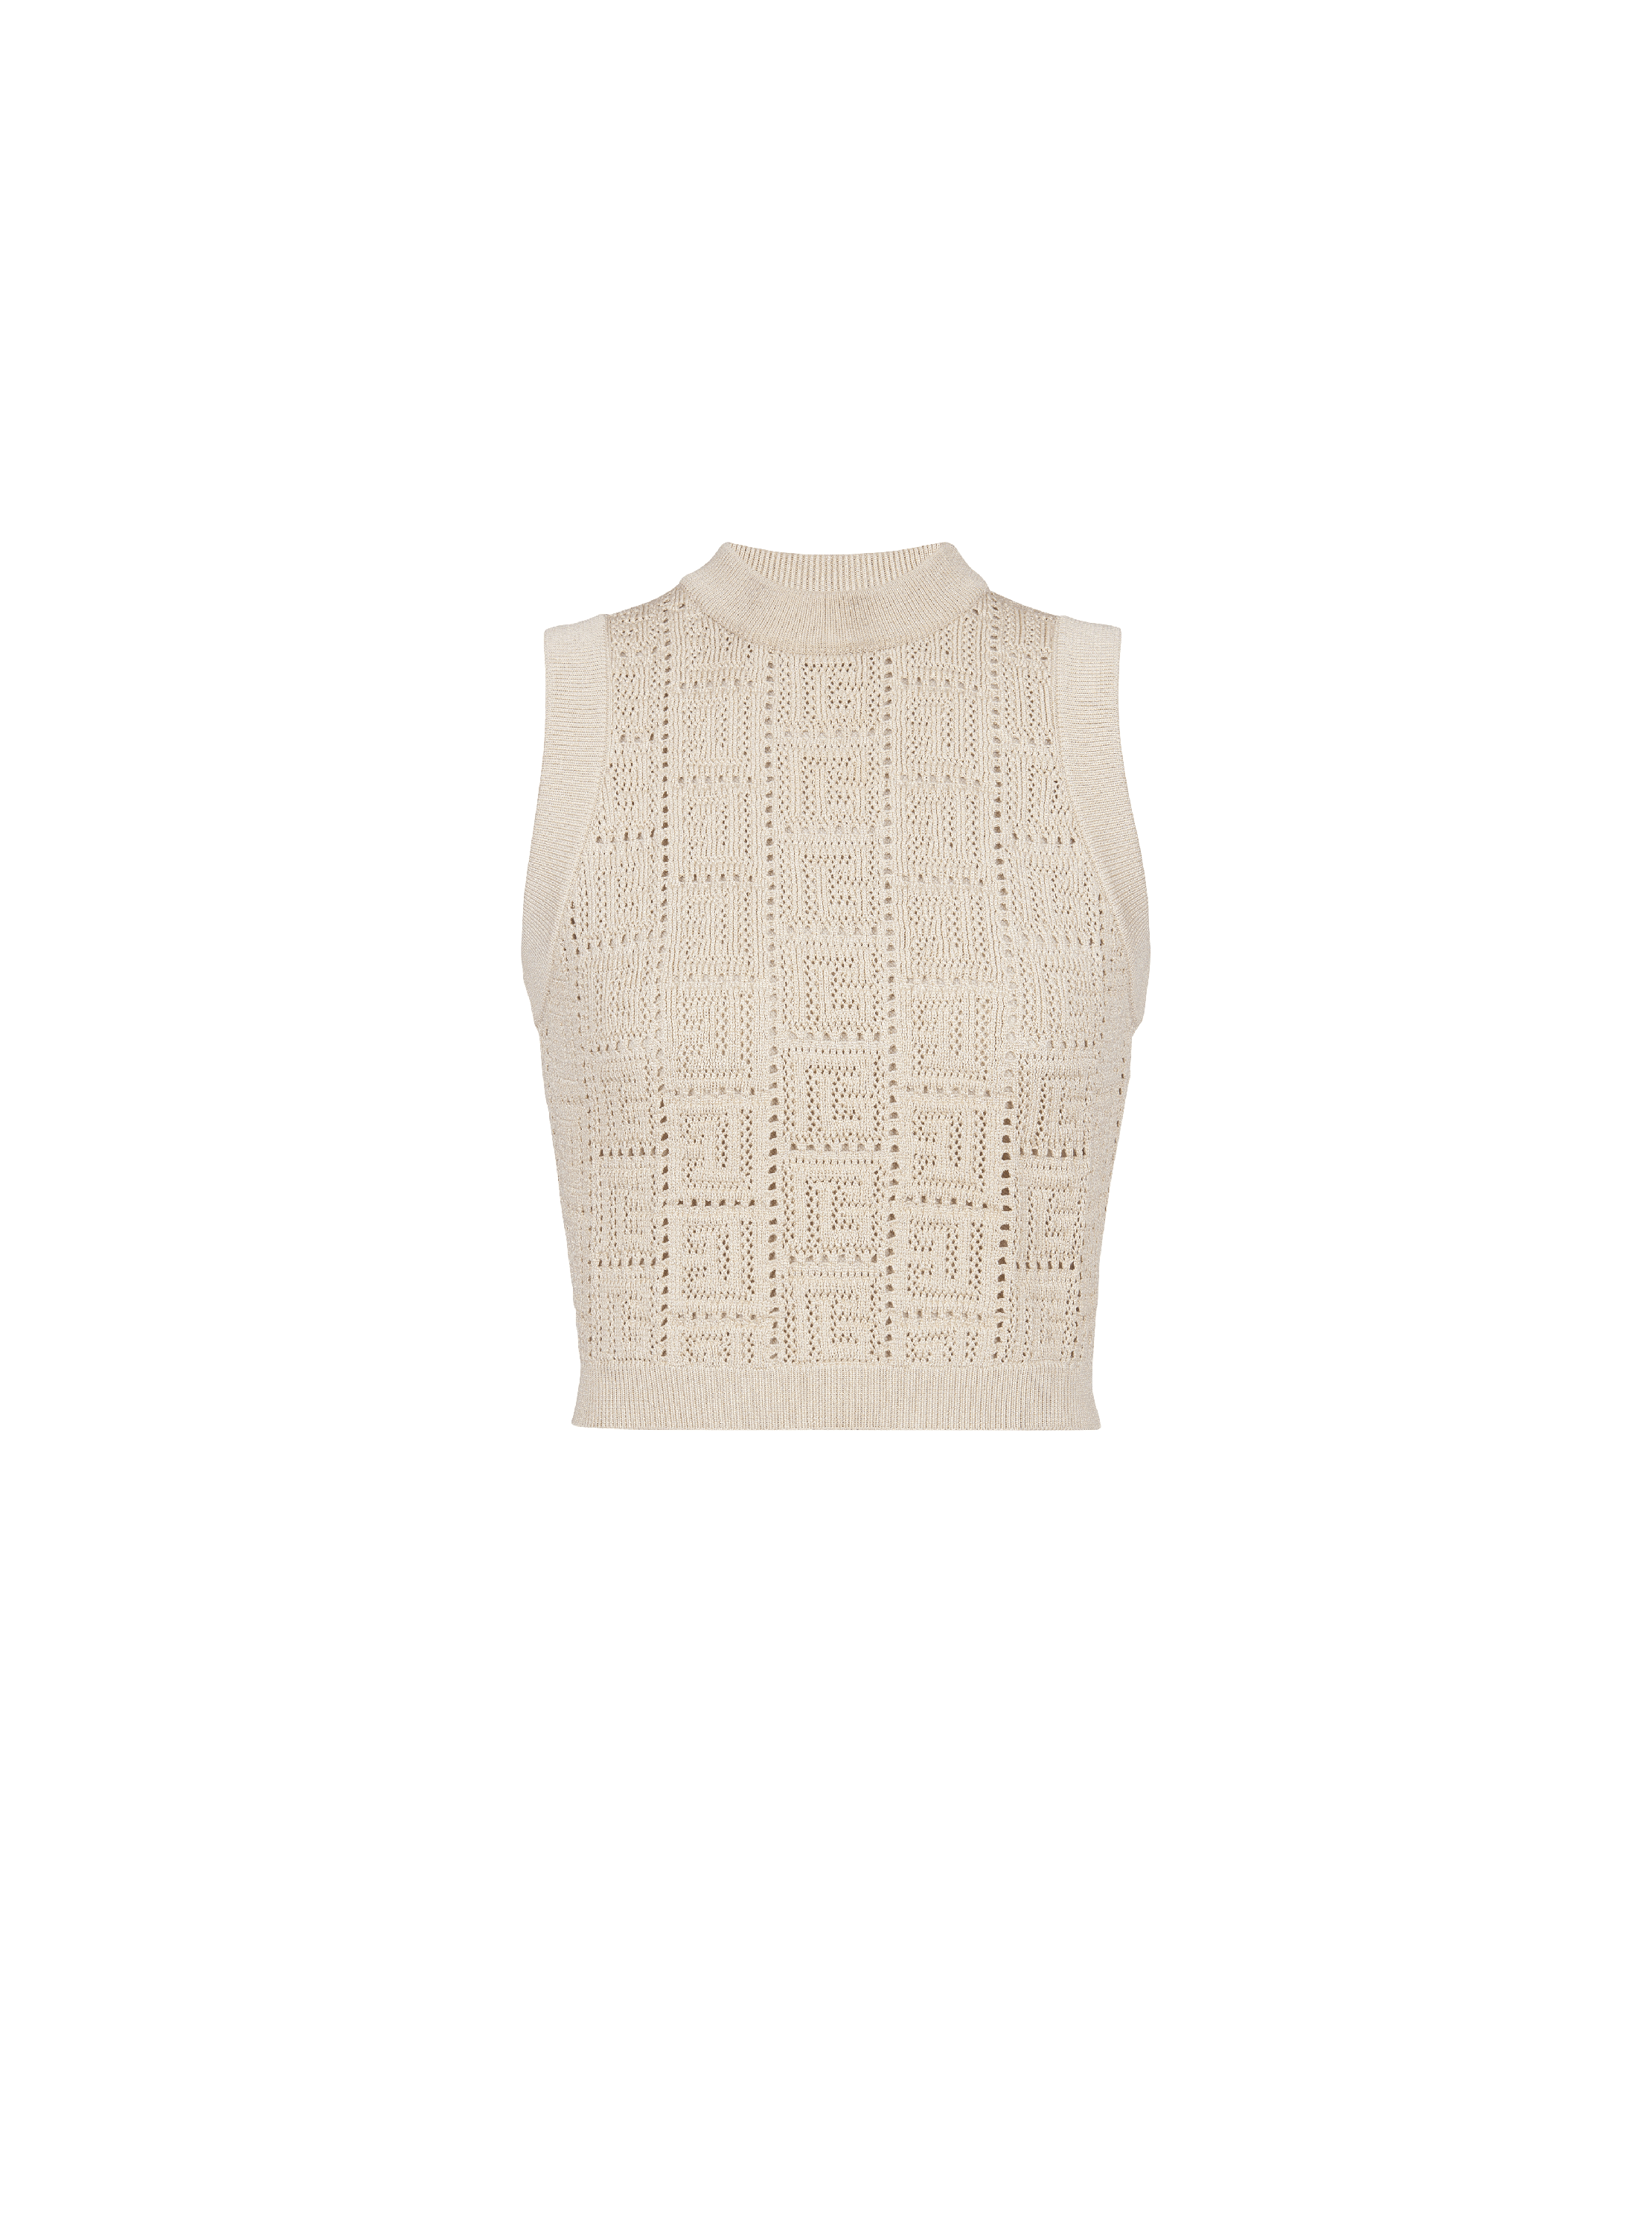 Monogrammed openwork knit top, beige, hi-res